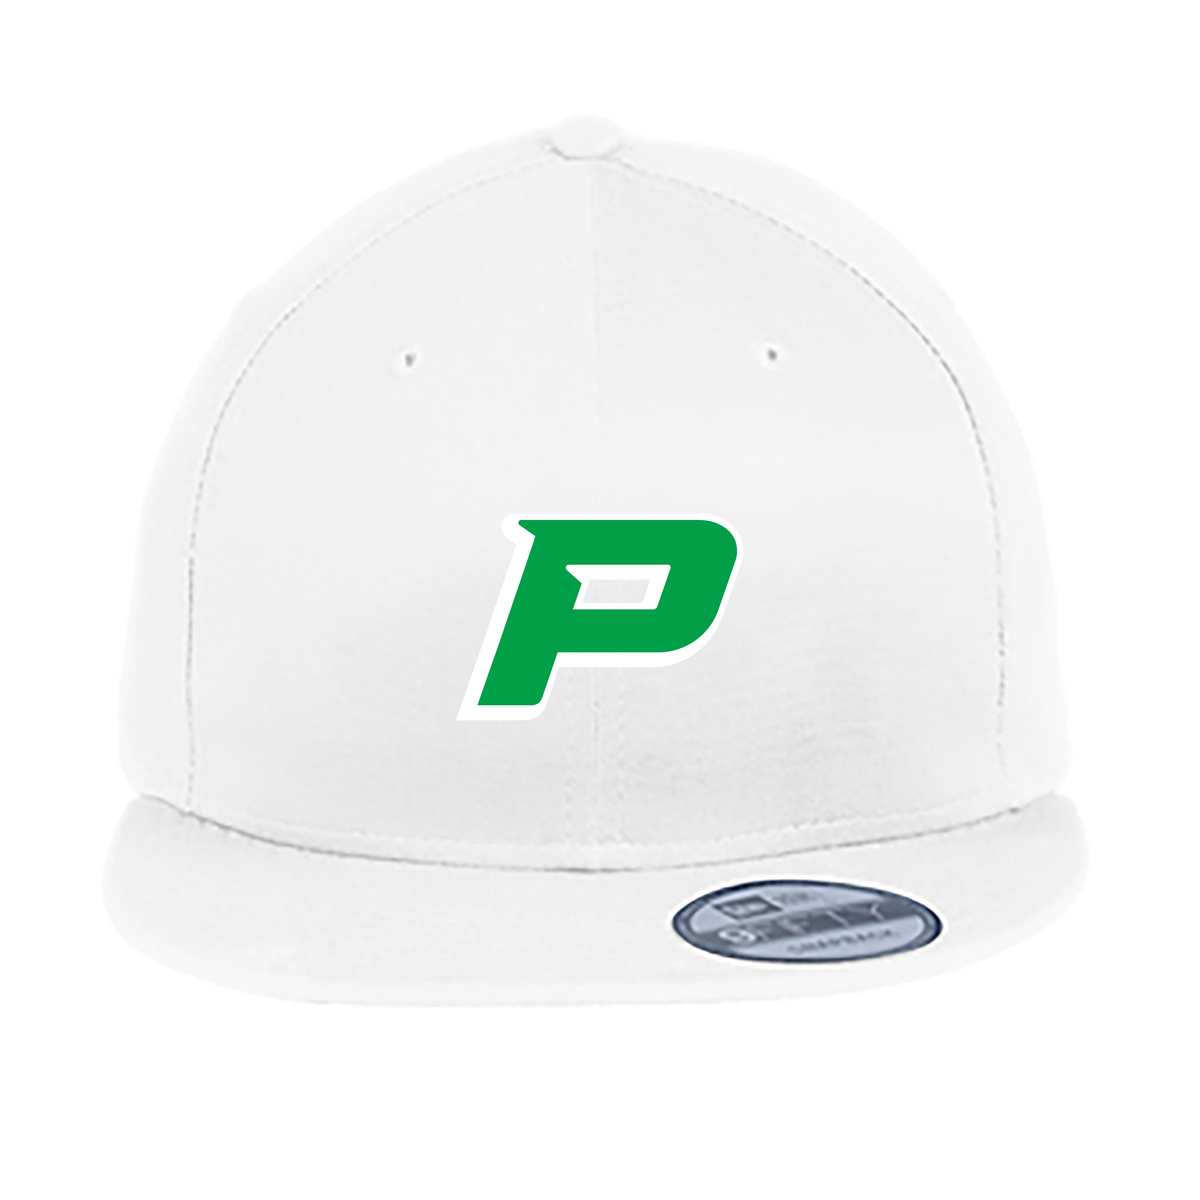 Pryor Baseball Farm New Era® Flat Bill Snapback Cap